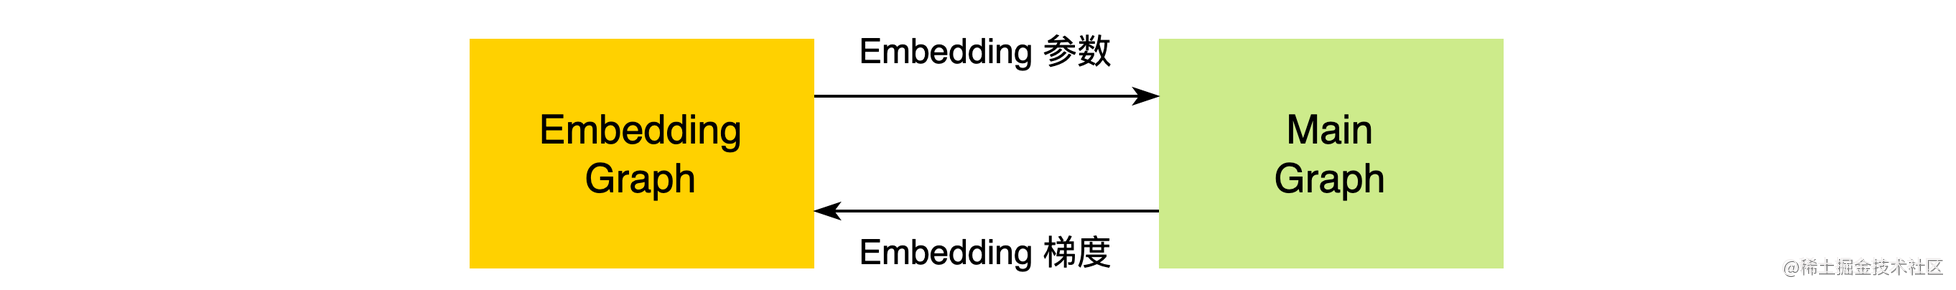 图9 Embedding流水线模块交互关系